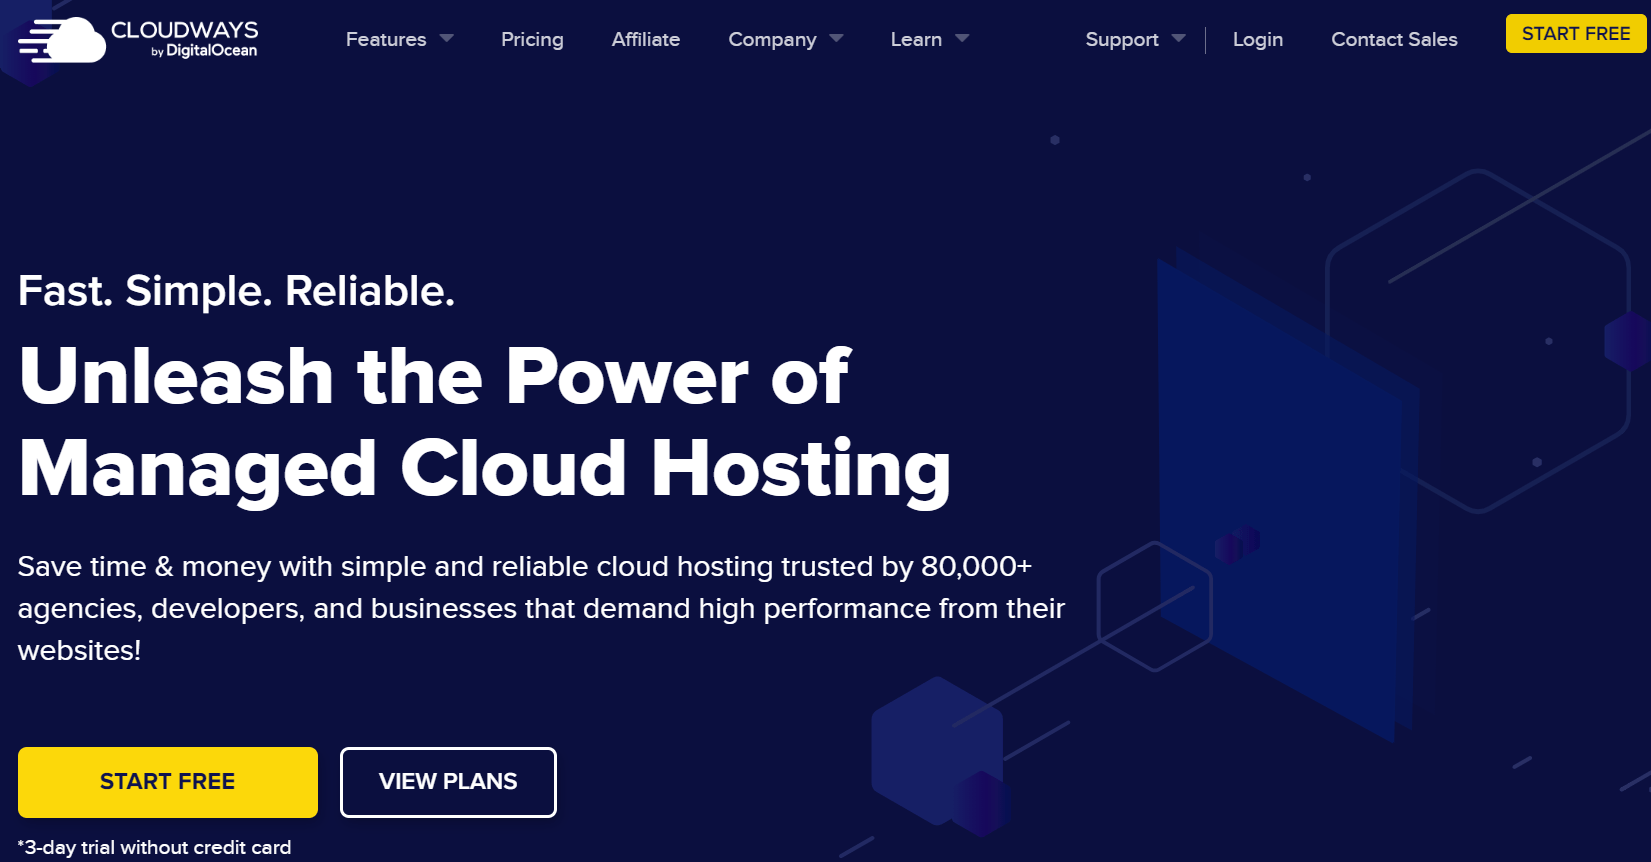 Cloudways Cloud Hosting Service